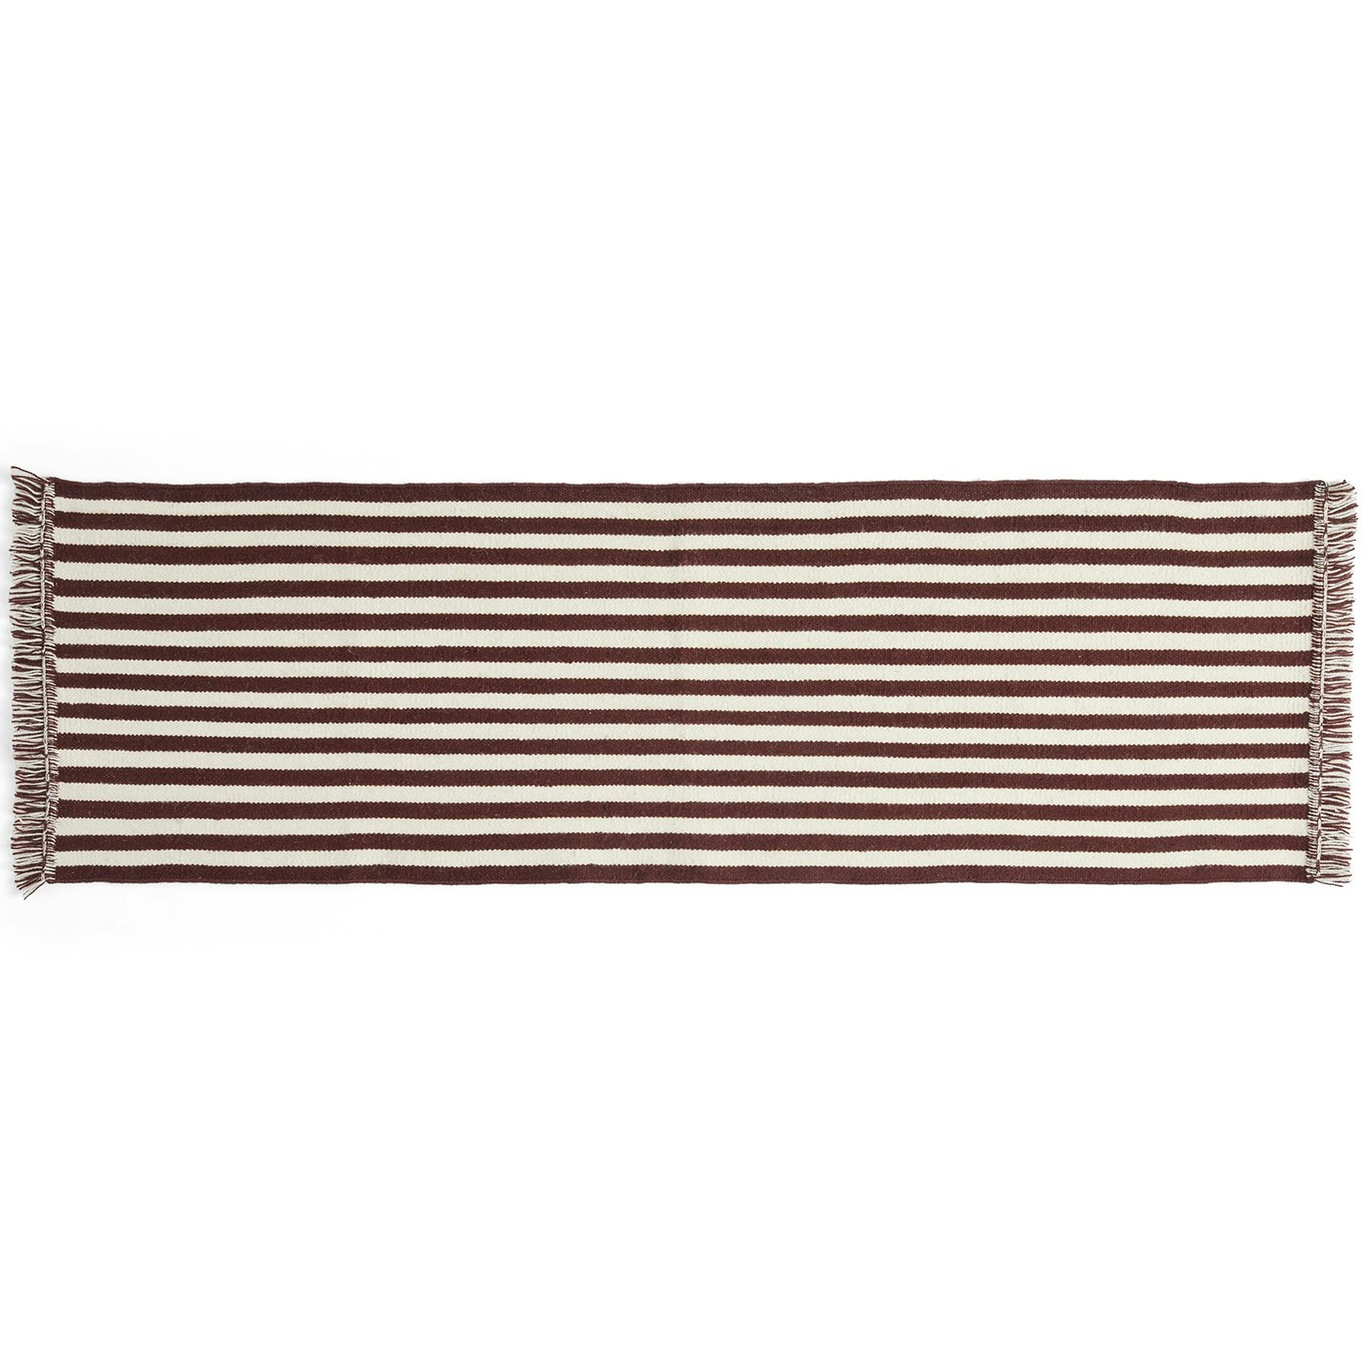 Stripes and Stripes Matto 60x200 cm, Cream